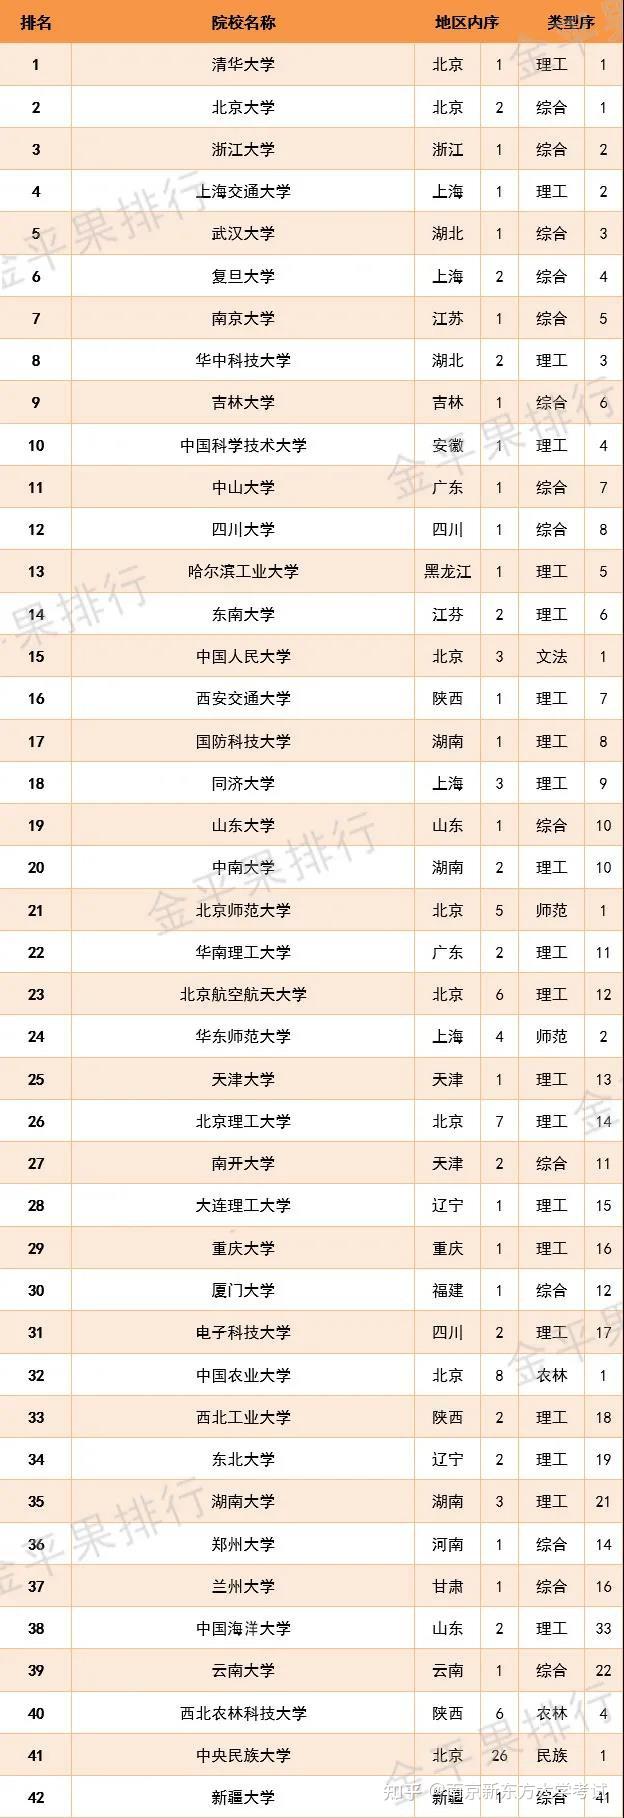 最新!2021中国大学排名发布:清华,北大,浙大,上海交大,武大居前五